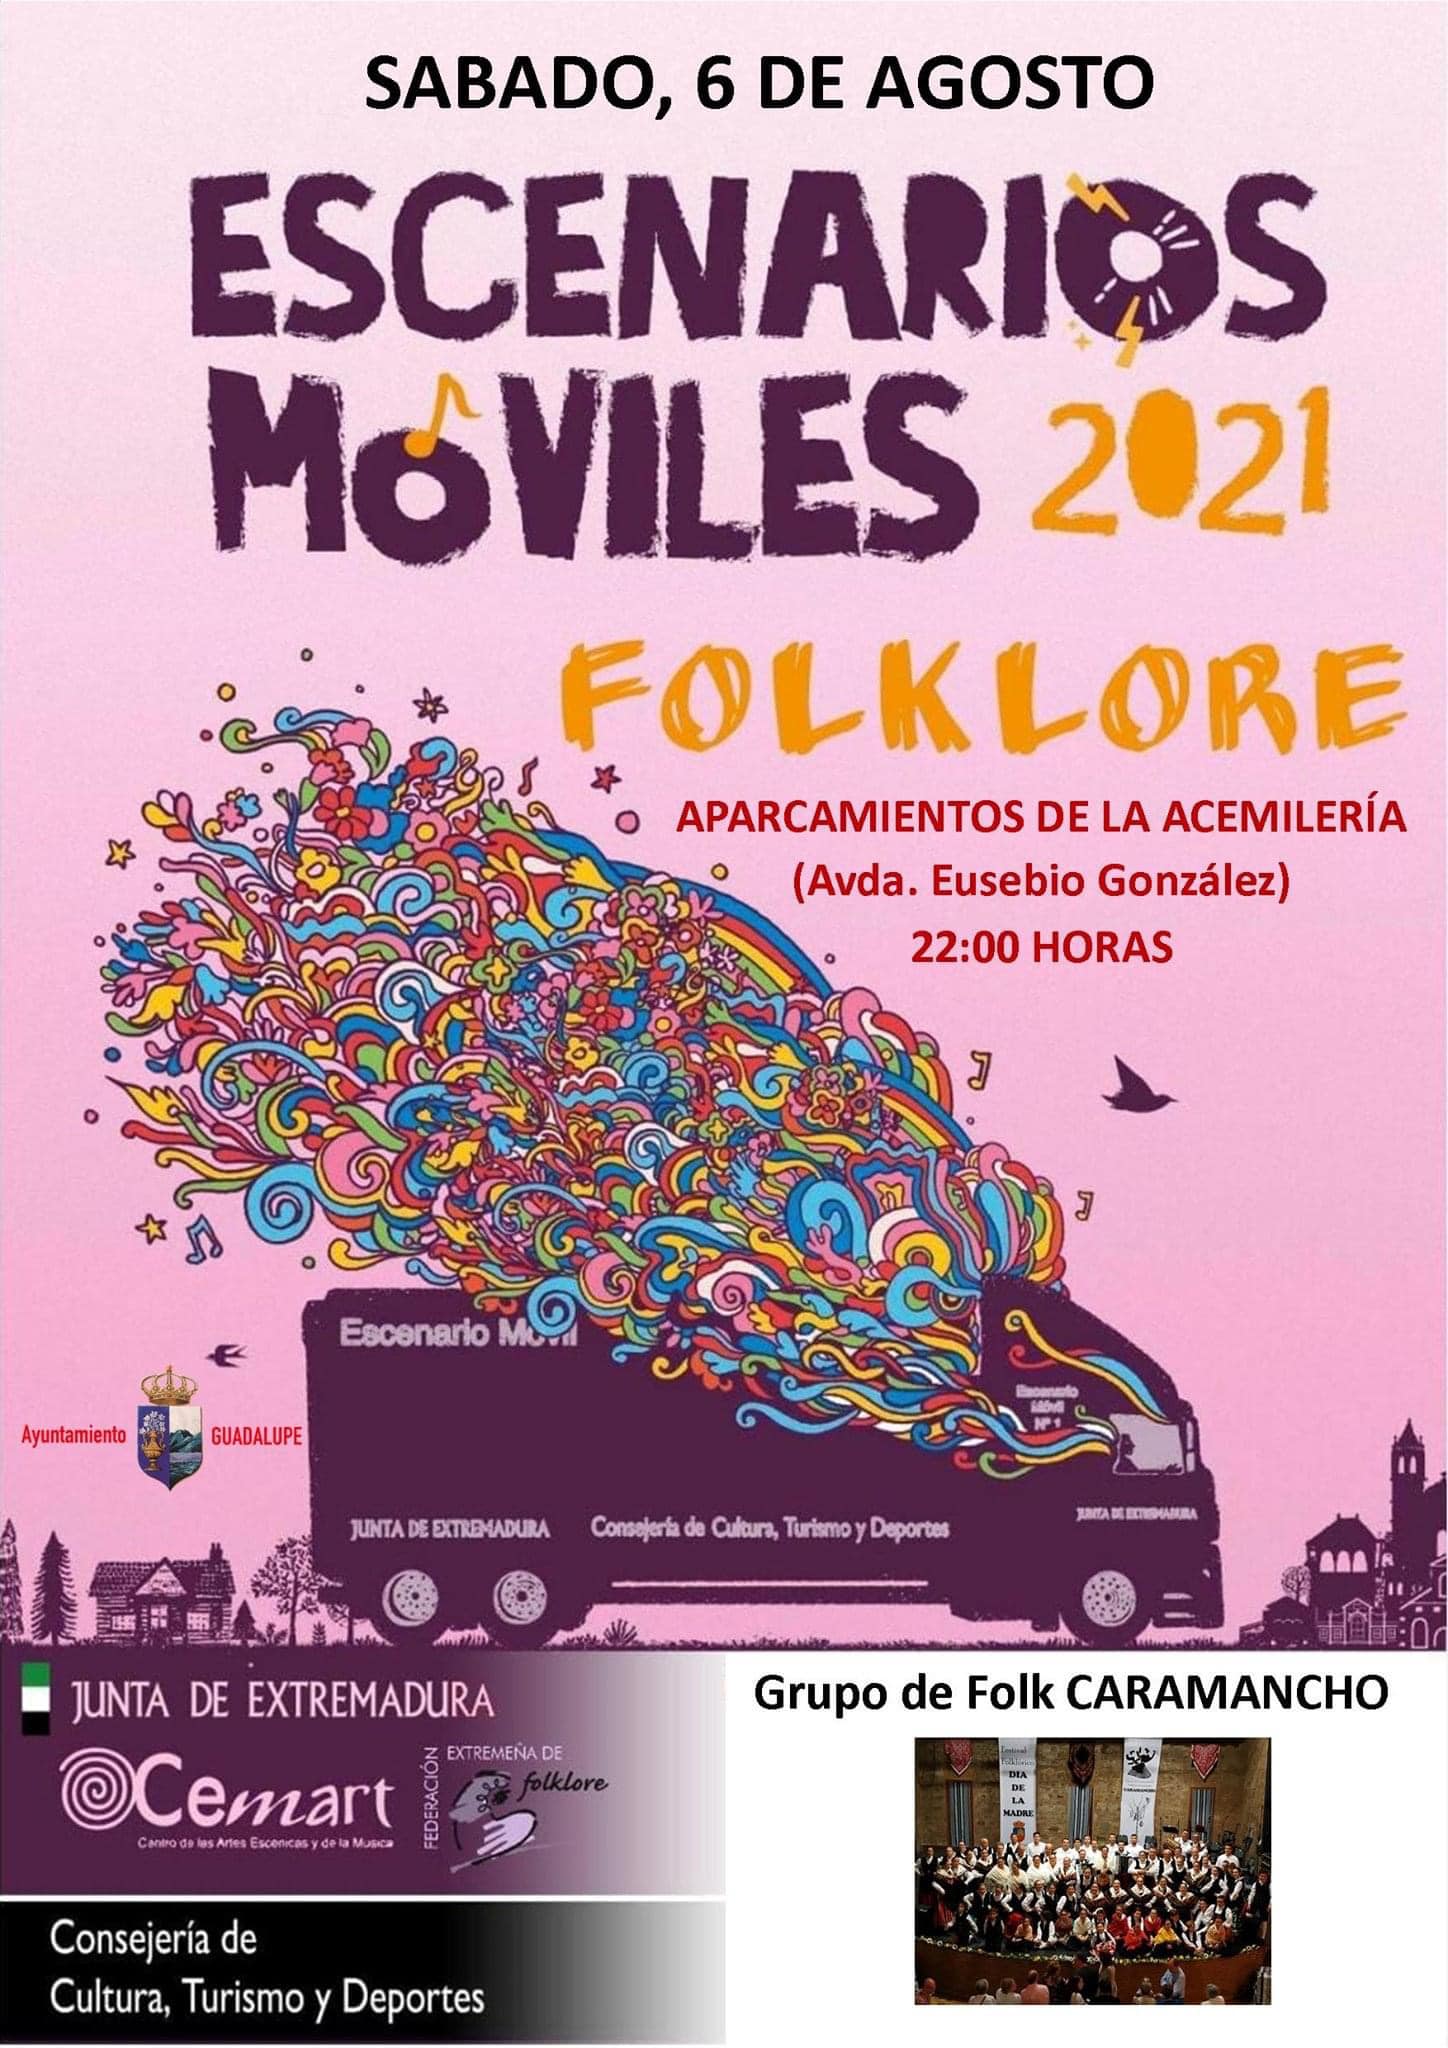 Grupo de Folk Caramancho (2021) - Guadalupe (Cáceres)